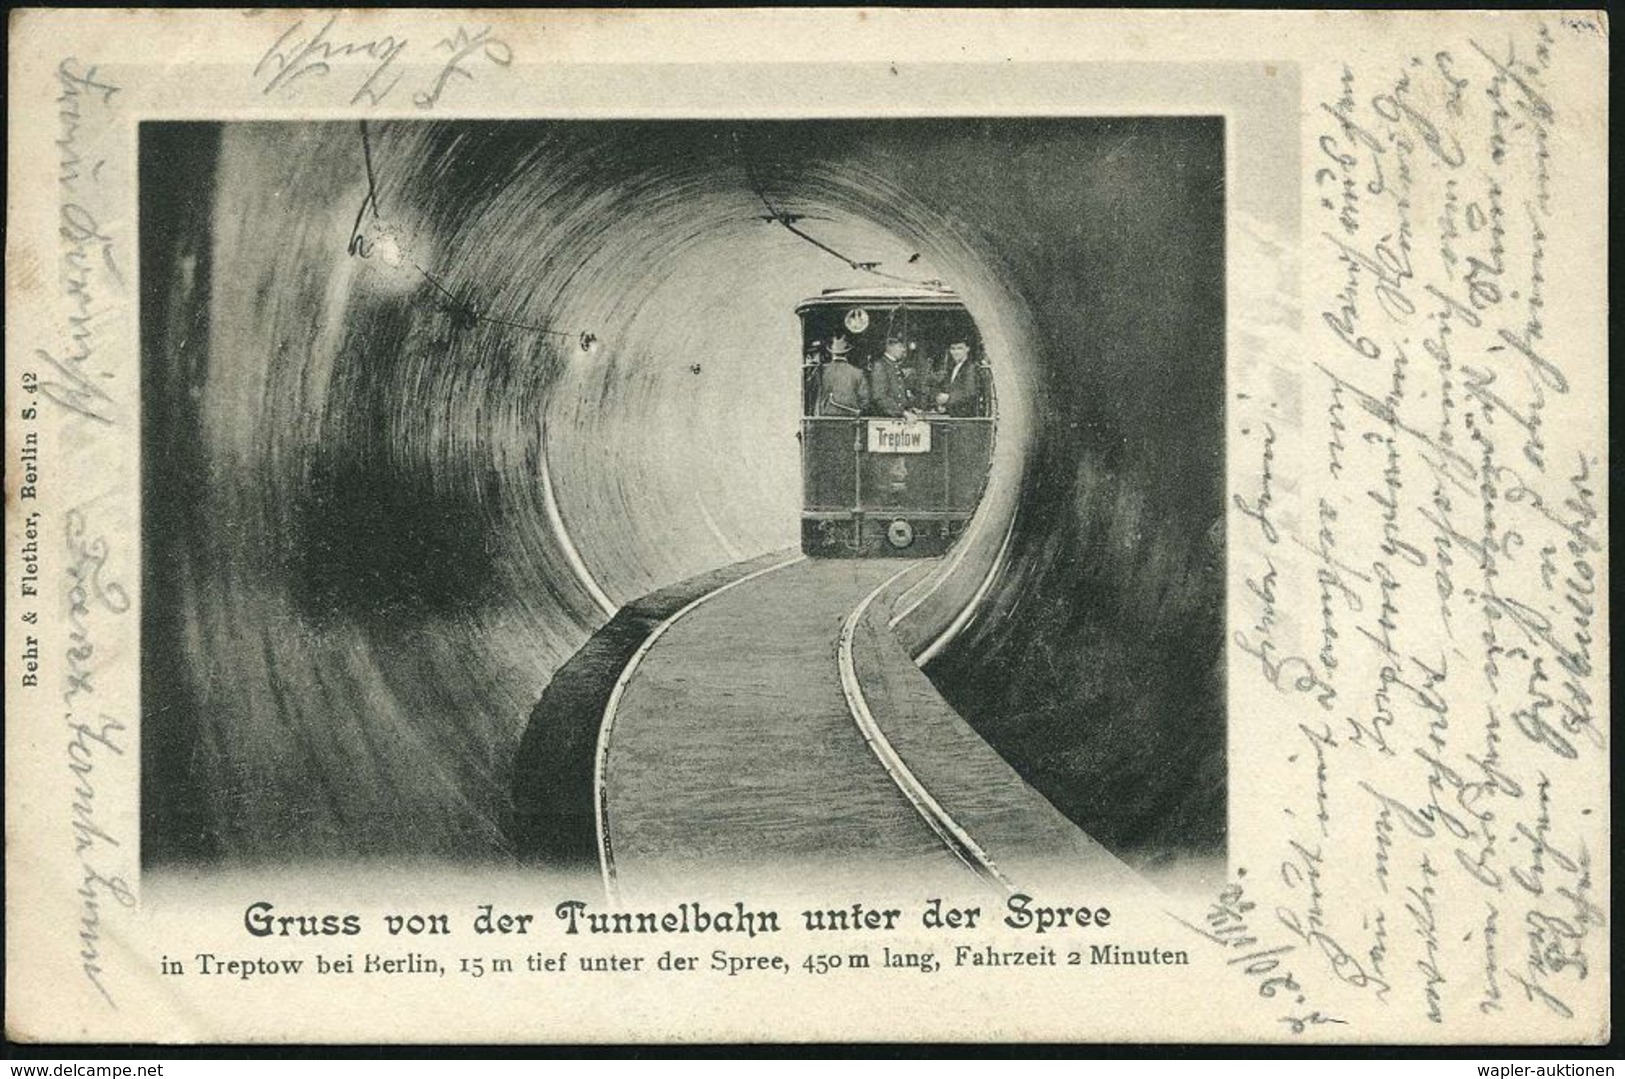 UNTERGRUNDBAHN /U-BAHN : Berlin-Treptow-Stralau 1902 (20.8.) 3 Verschiedene S/w.-Foto-Ak.: Gruss Von D. Tunnelbahn Unter - Trains